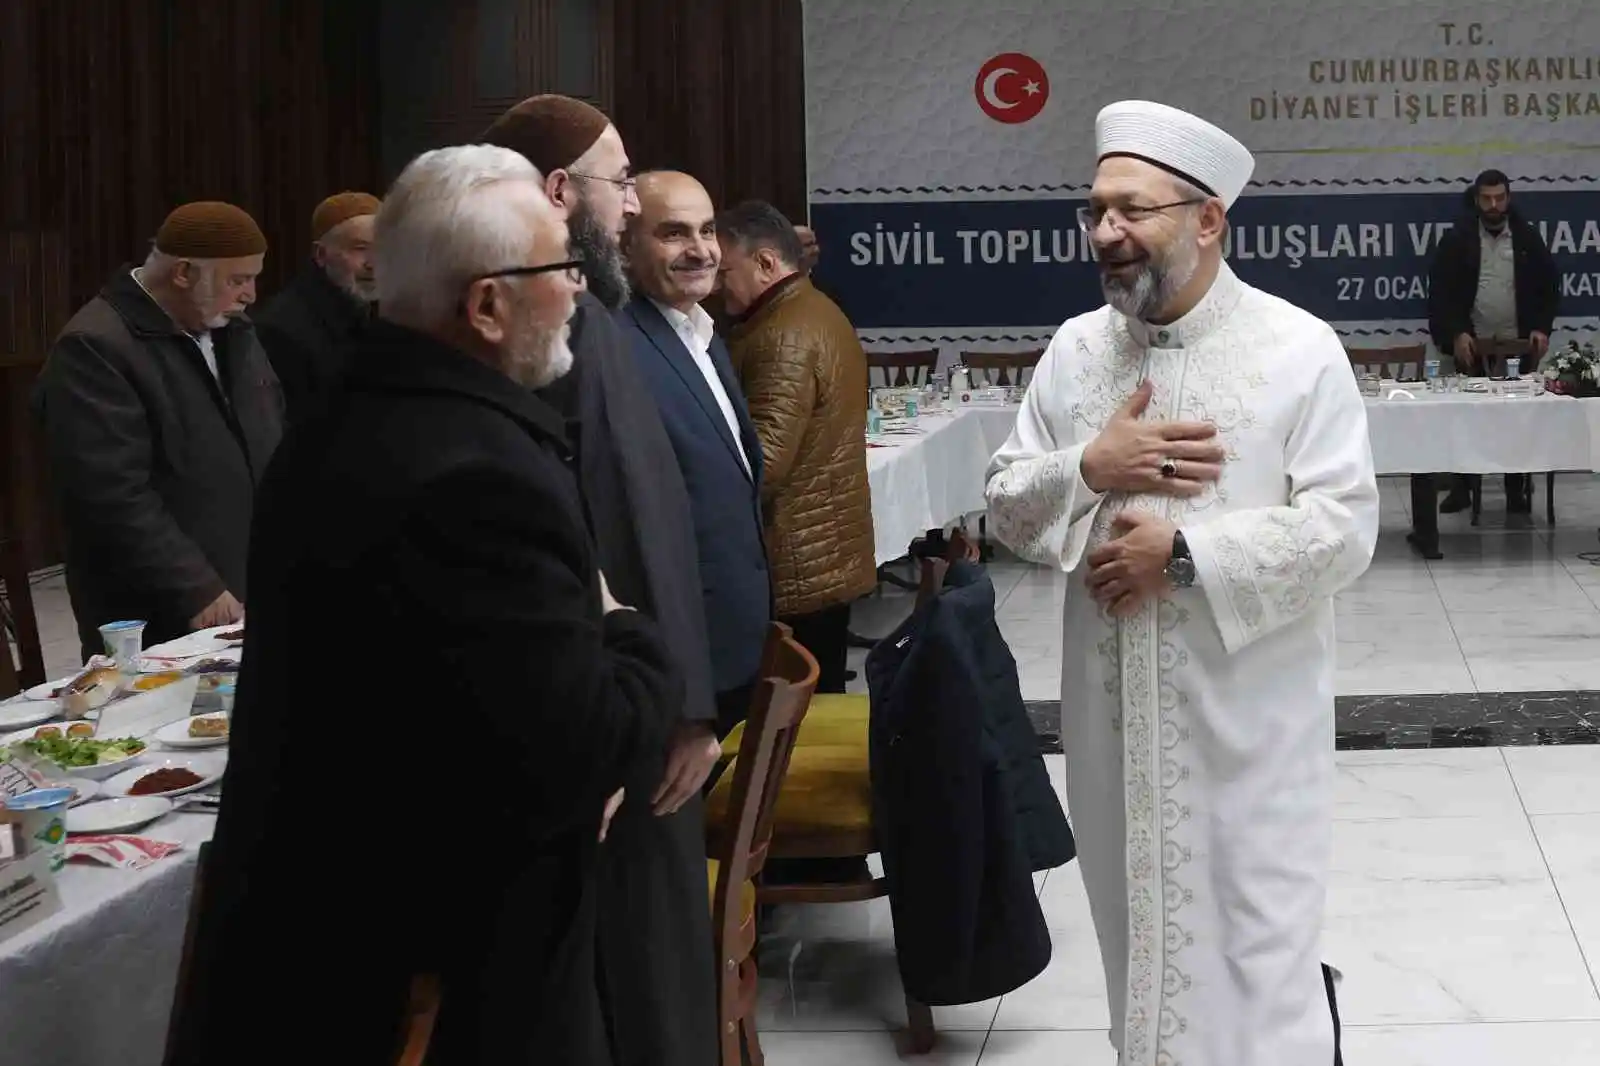 Diyanet İşleri Başkanı Erbaş: "İslam, toplumsal dengenin ilacıdır"
